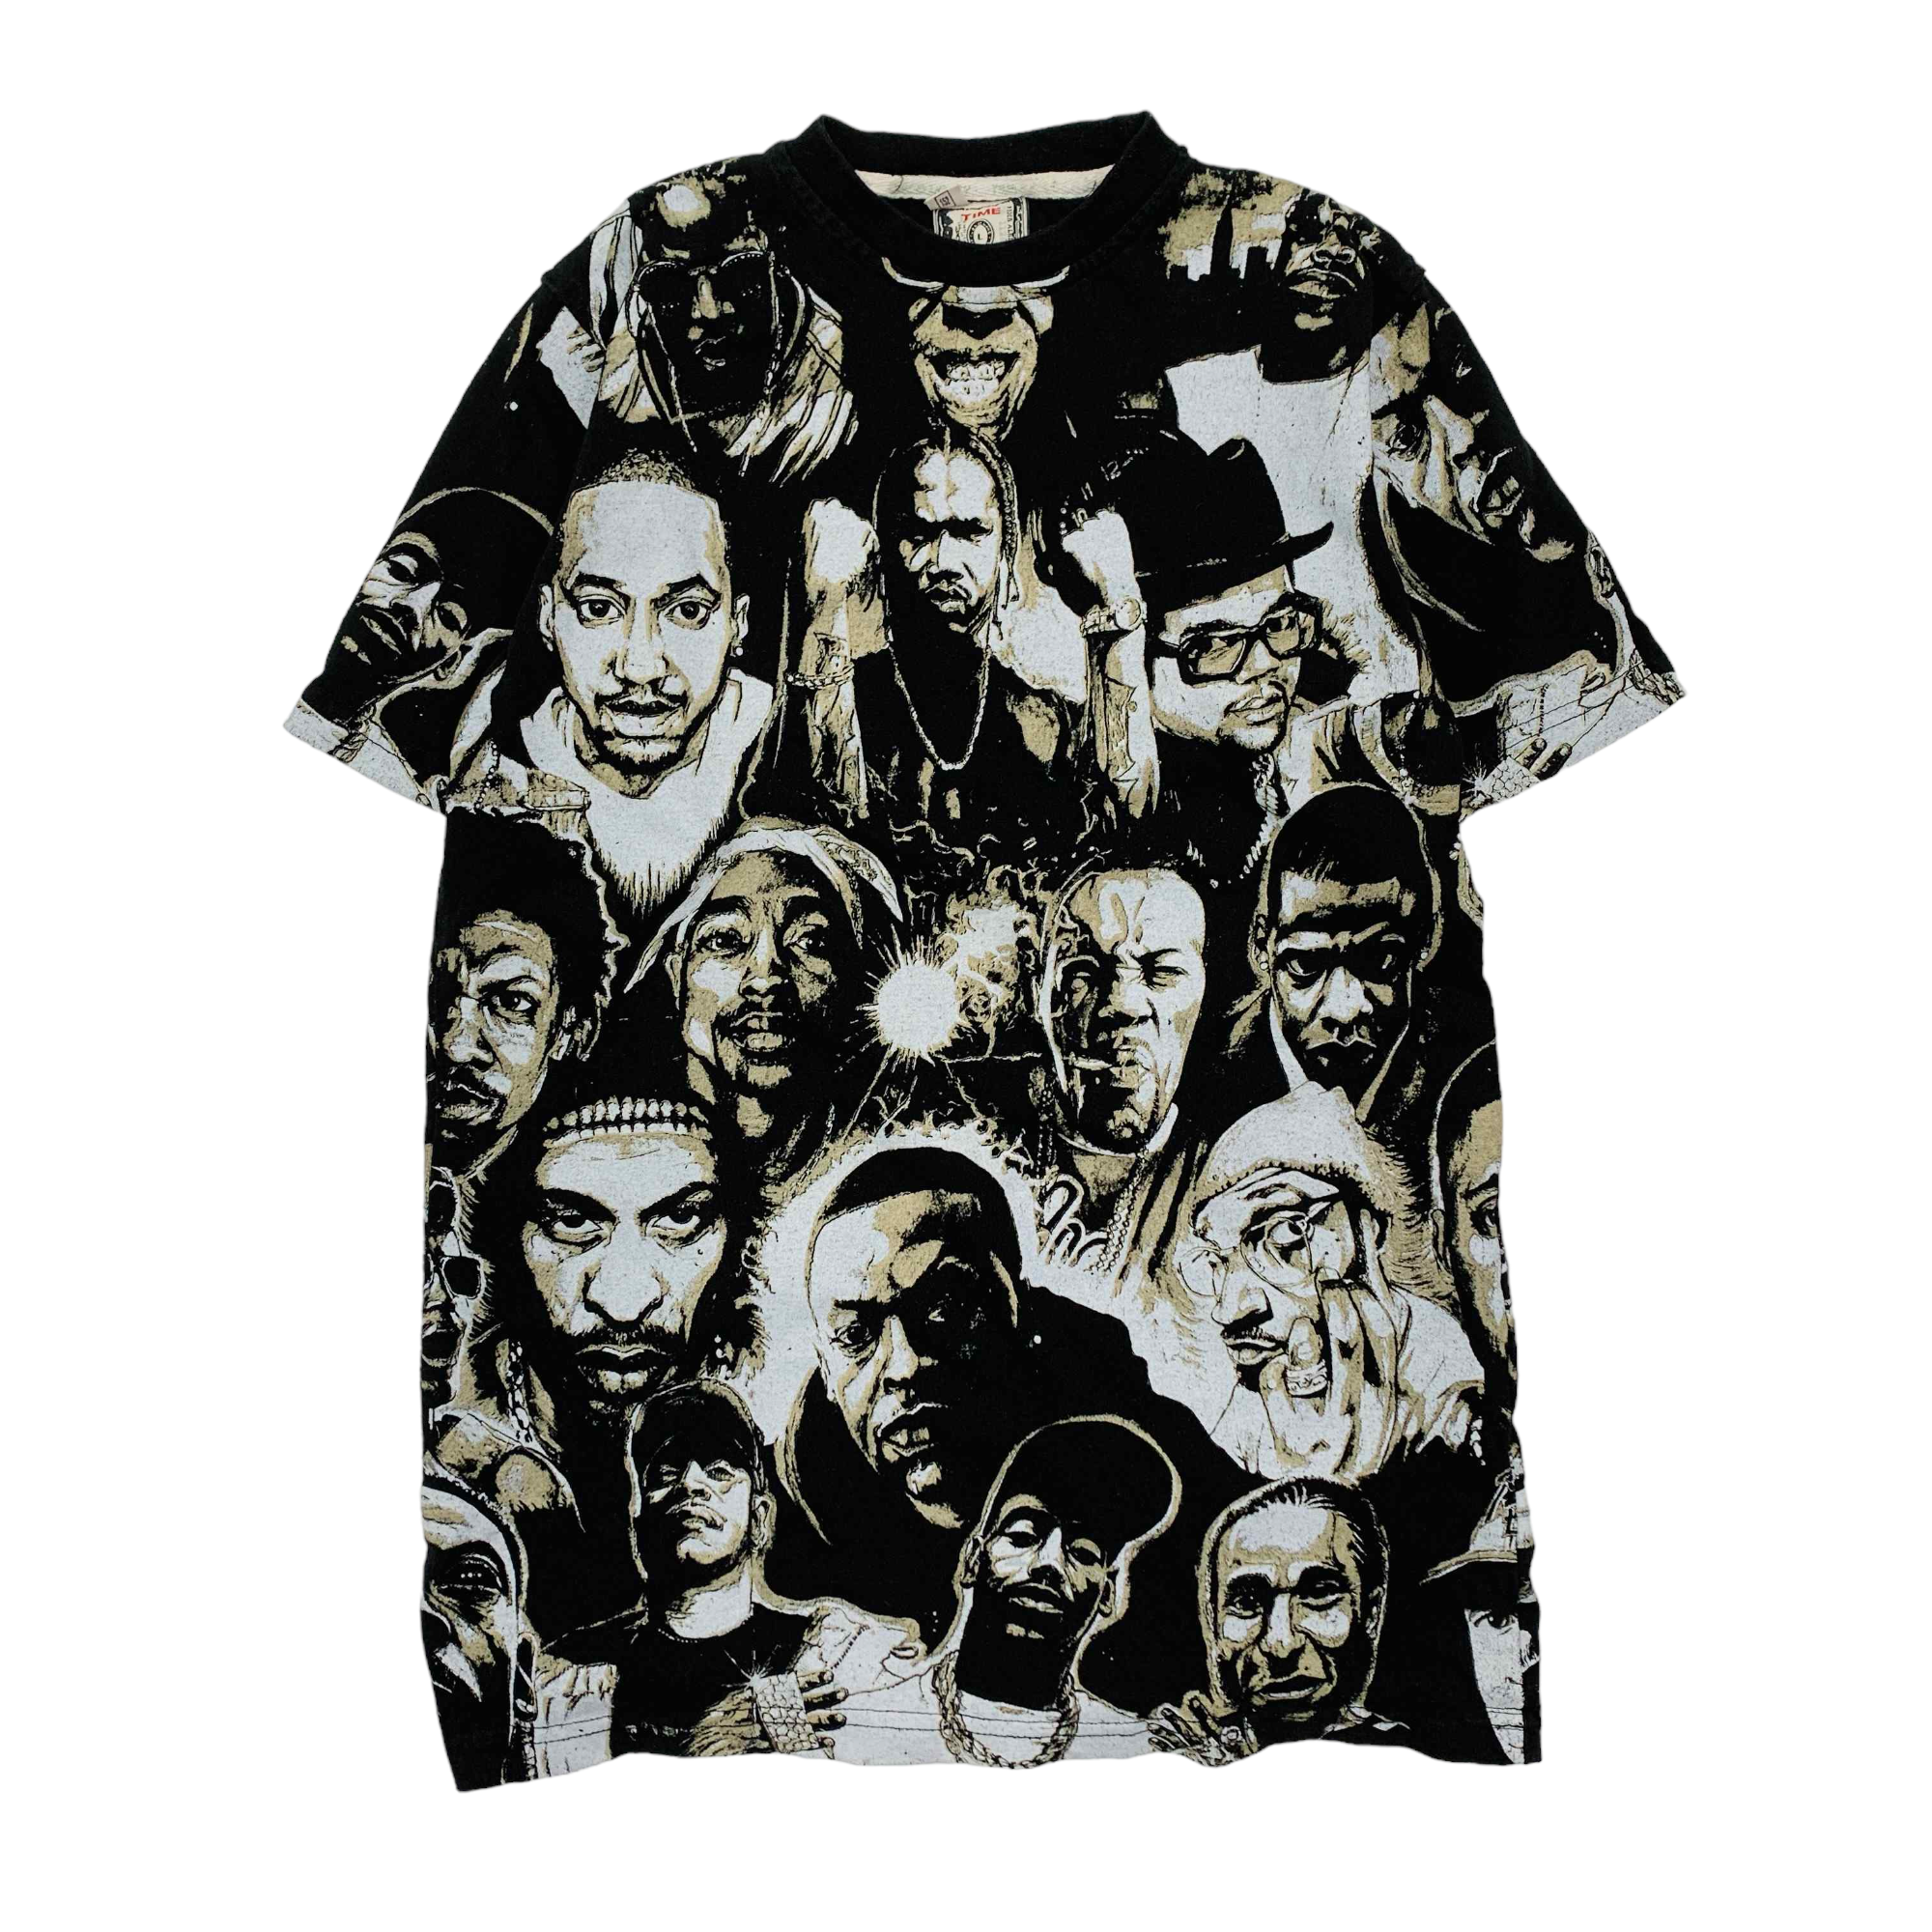 Hip Hop Legends All Over T-shirt - Small